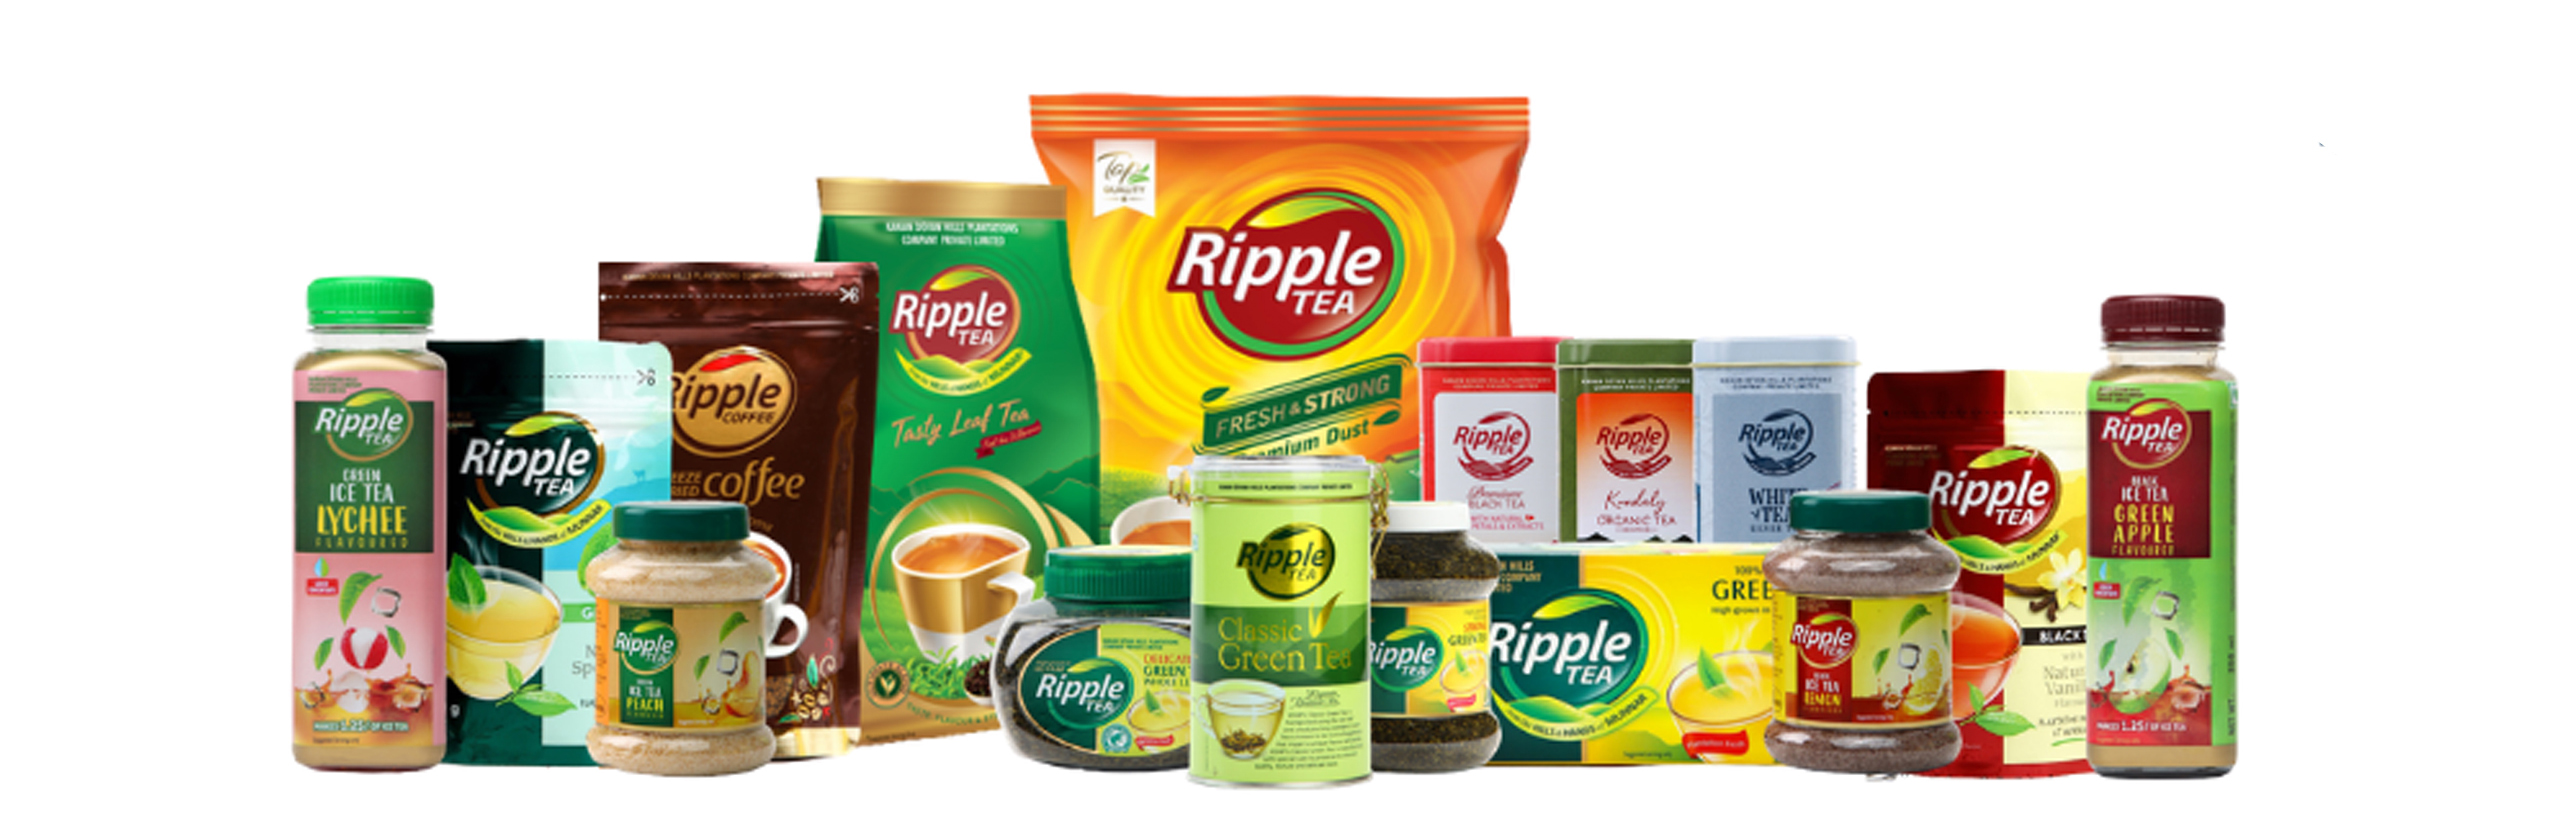 Ripple tea products